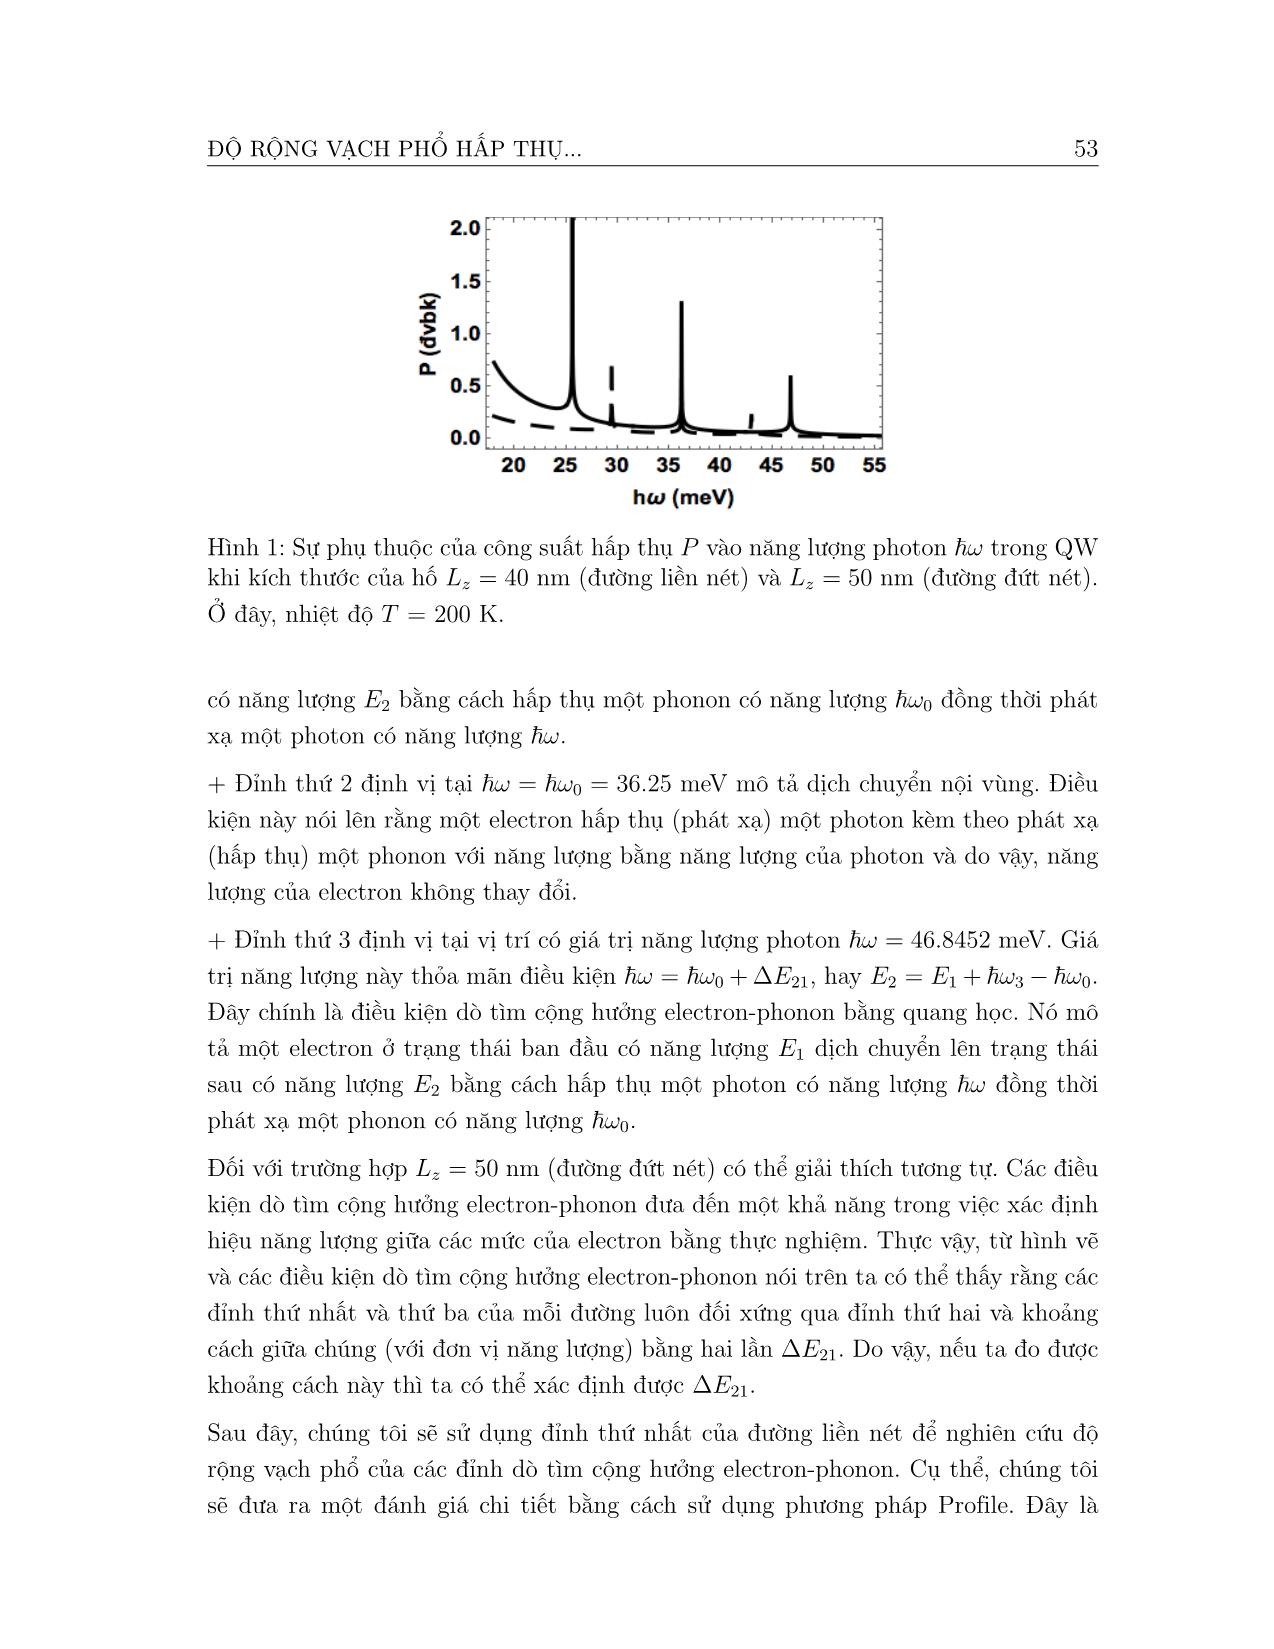 Nghiên cứu độ rộng vạch phổ hấp thụ dò tìm cộng hưởng Electron-phonon trong hố lượng tử thế vuông góc cao vô hạn trang 6